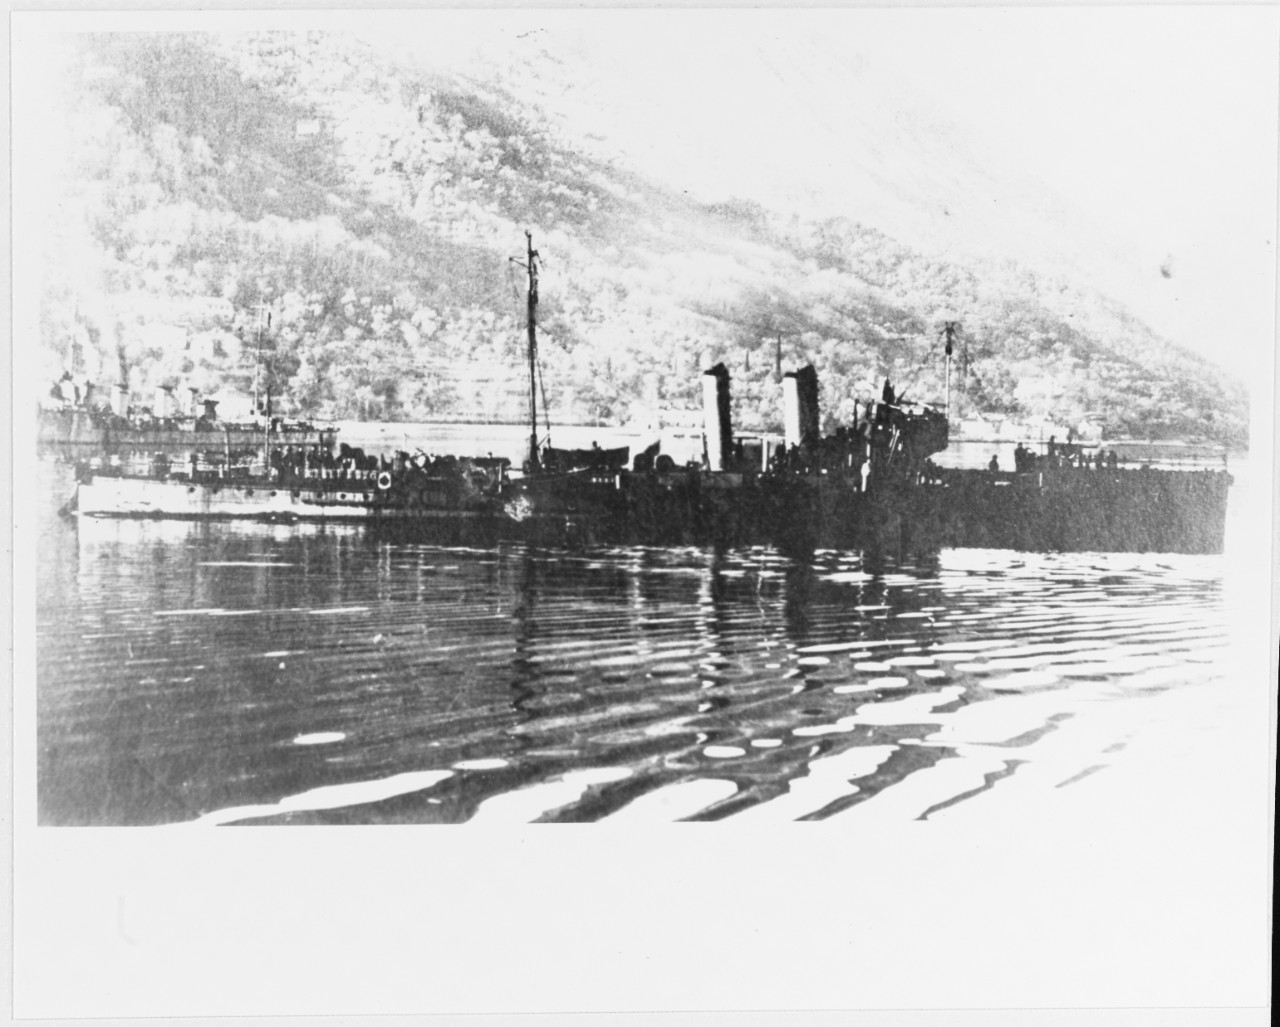 82F Class (Austrian Torpedo Boat, circa 1914)